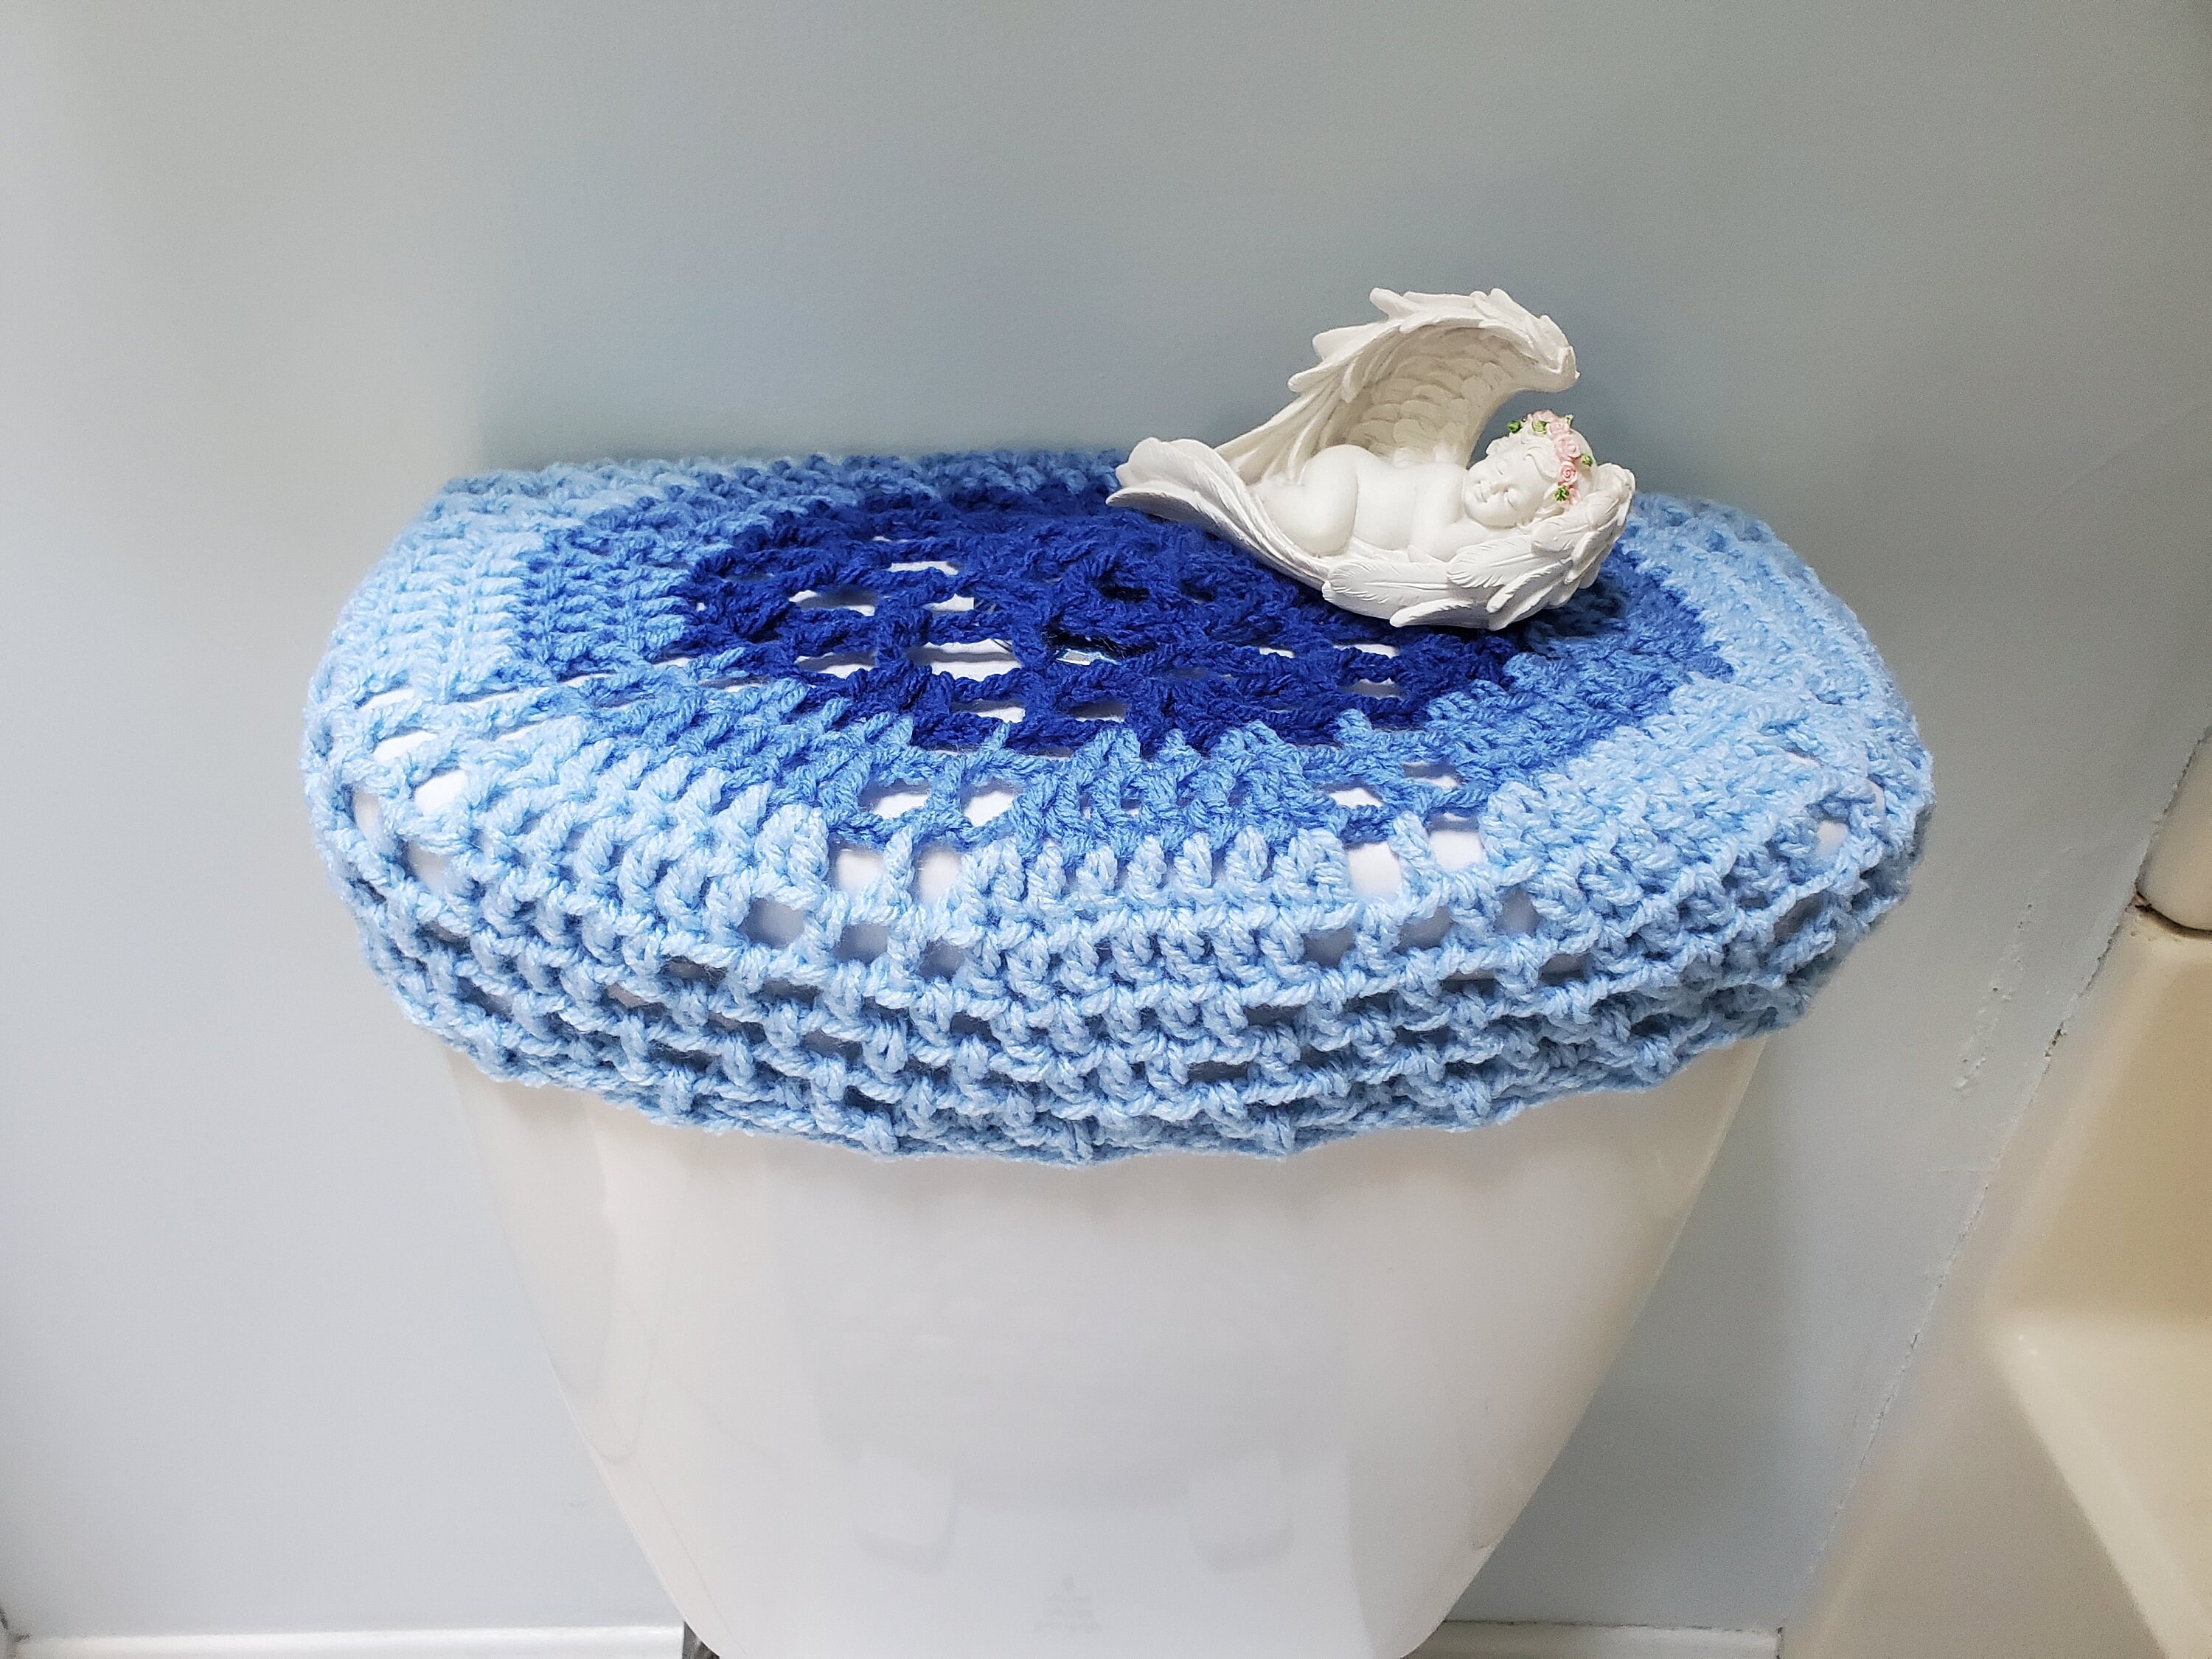 Lot de 2 une housse de siège de toilette au crochet et une housse de  couvercle de réservoir, produit de beauté pour la salle de bain bleu moyen  TTLTSC29E -  France